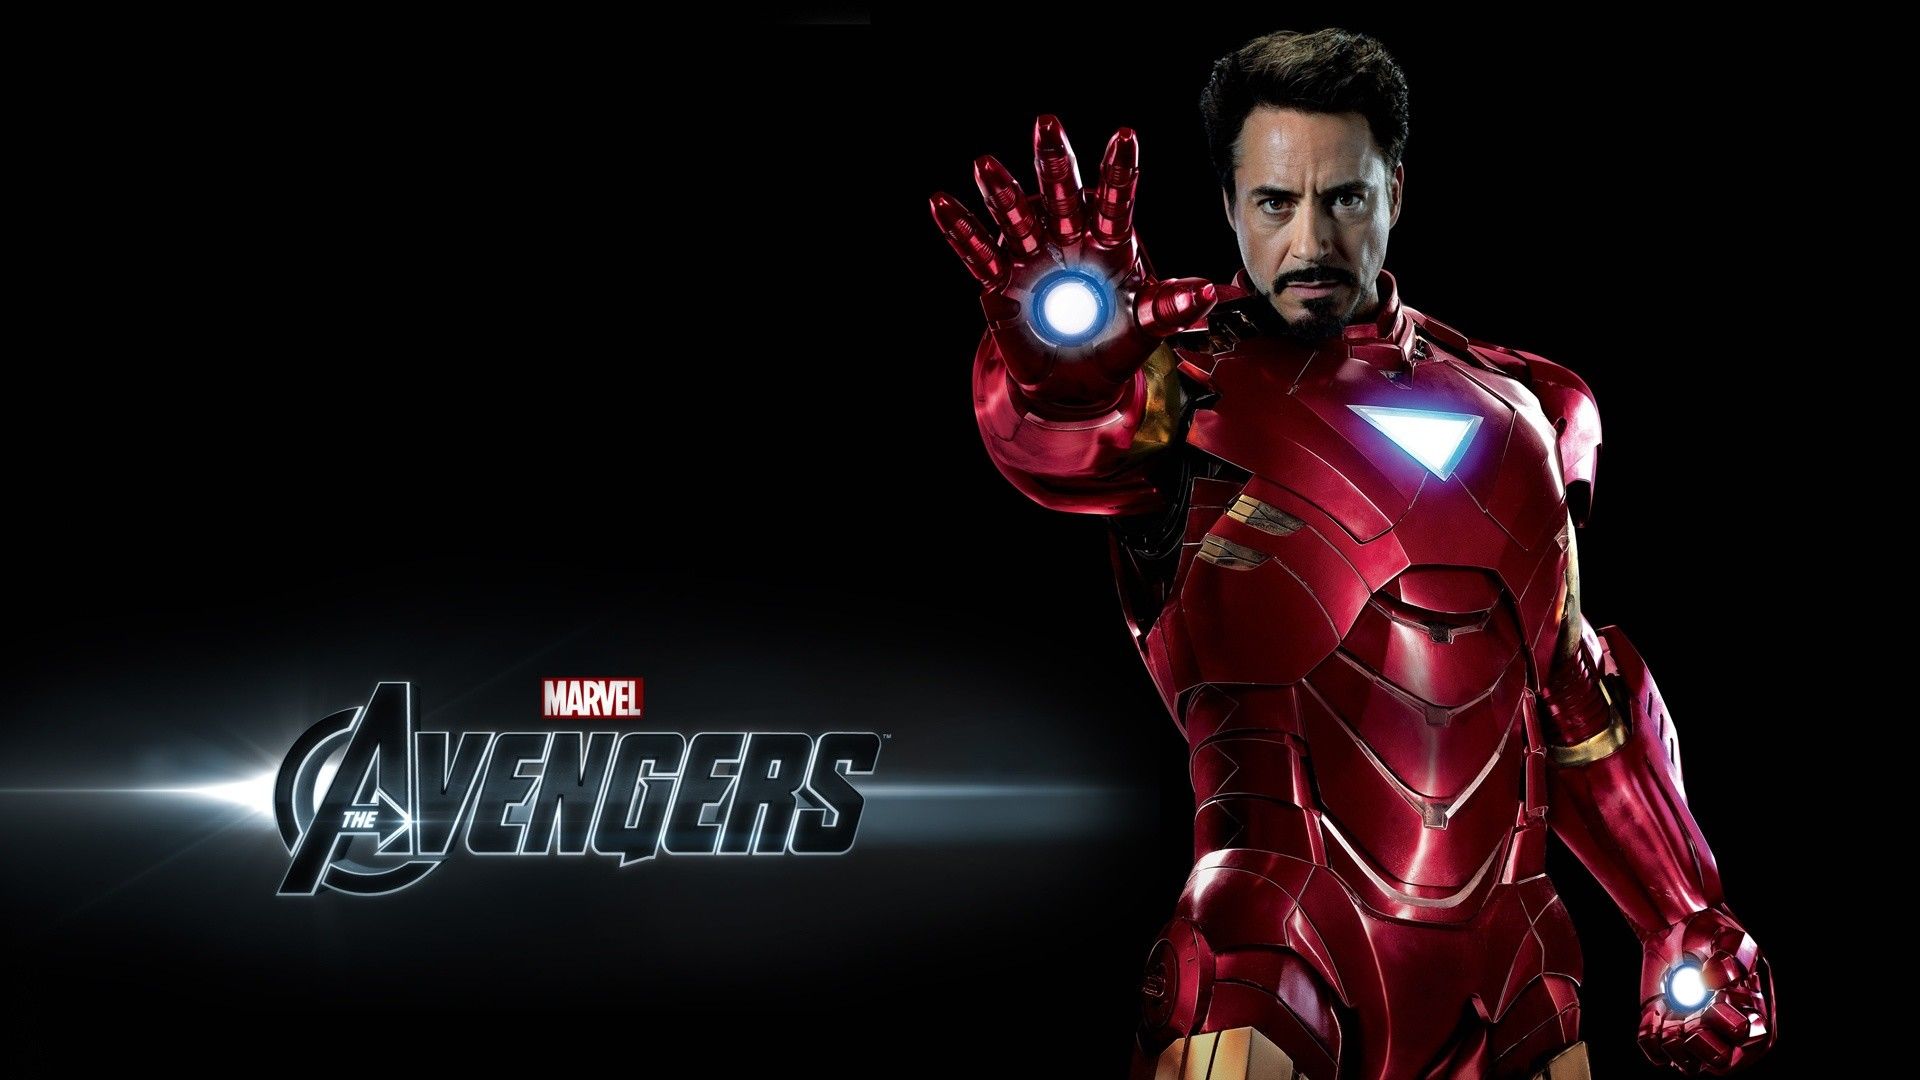 Marevl Avengers Ironman Poster Wallpaper